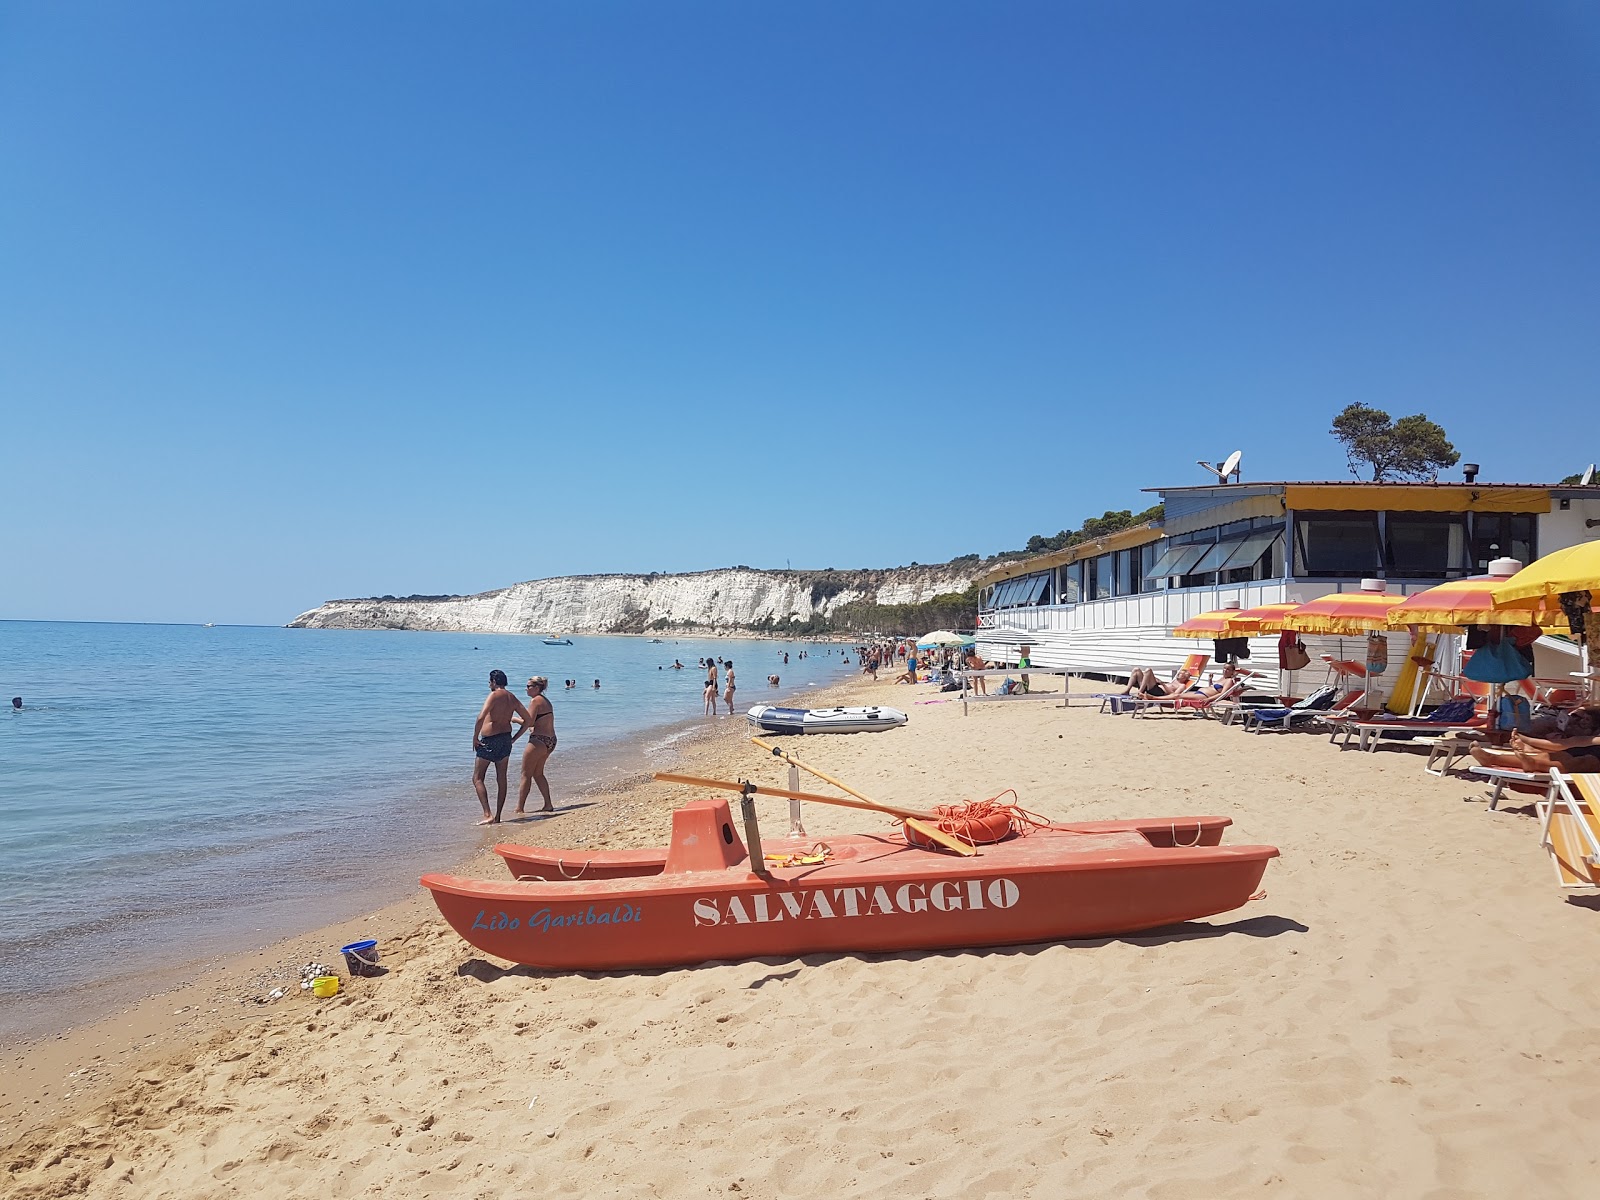 Photo of Spiaggia Di Eraclea Minoa located in natural area